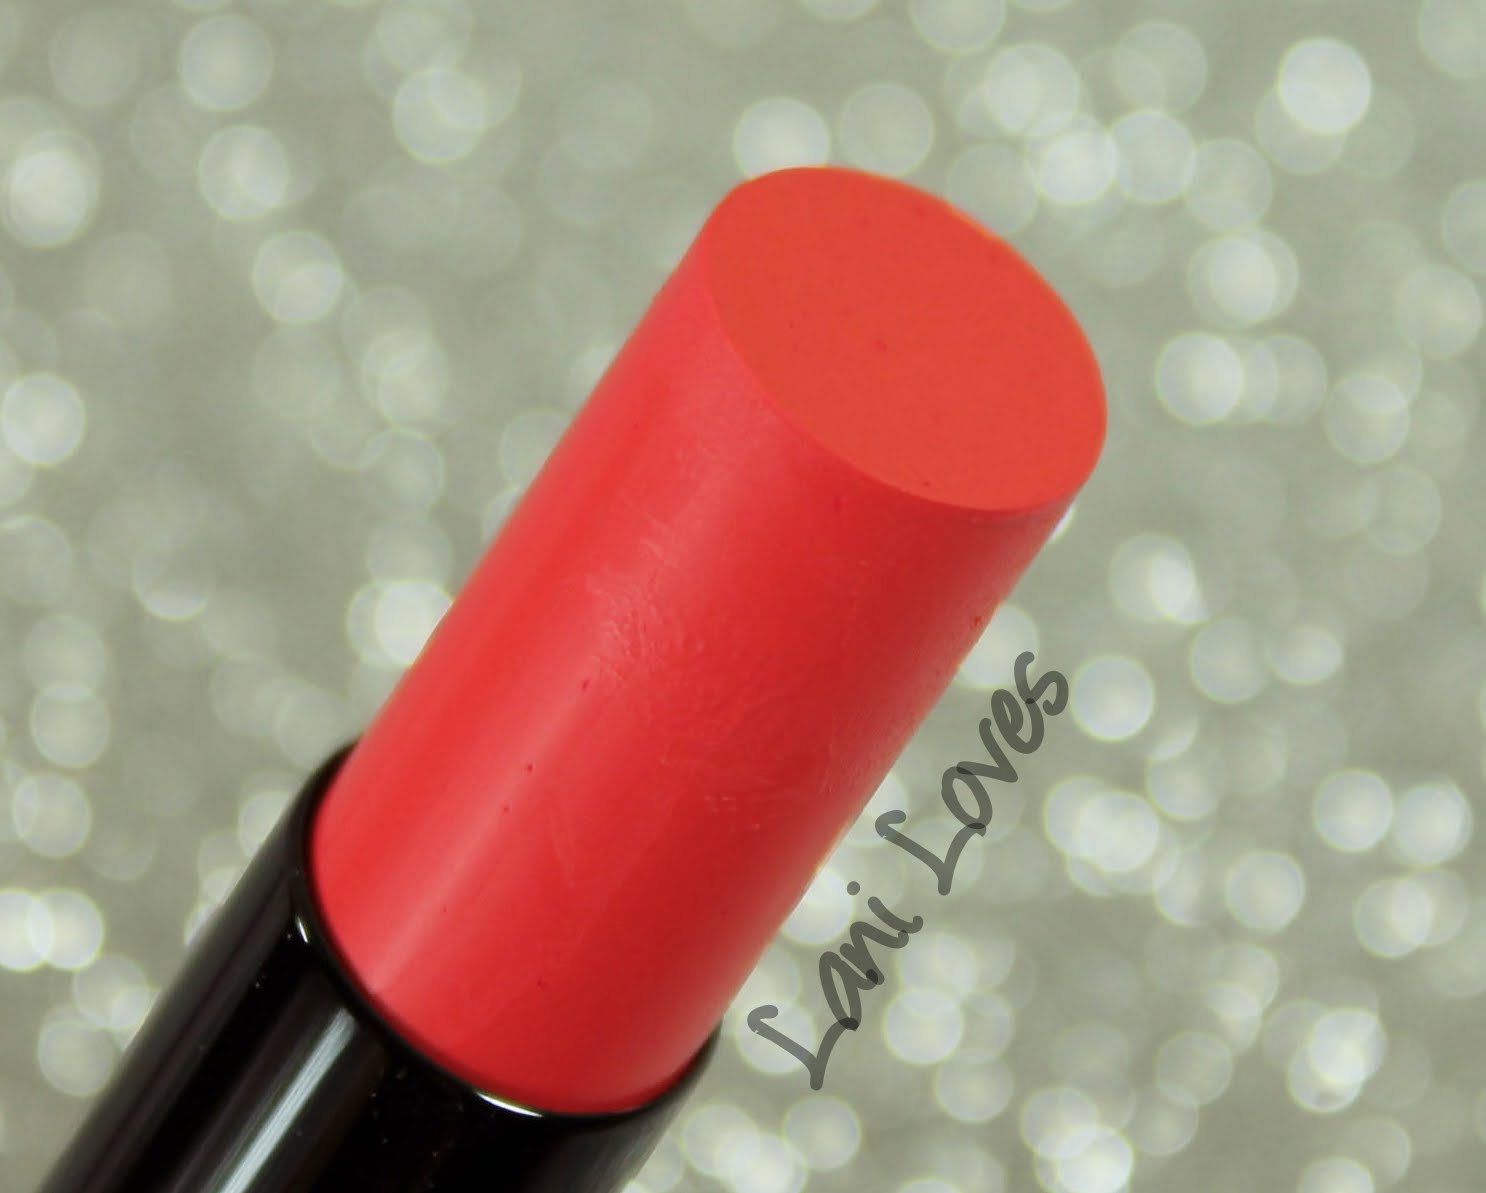 ZA Vibrant Moist Lipstick - PK444 swatches & review